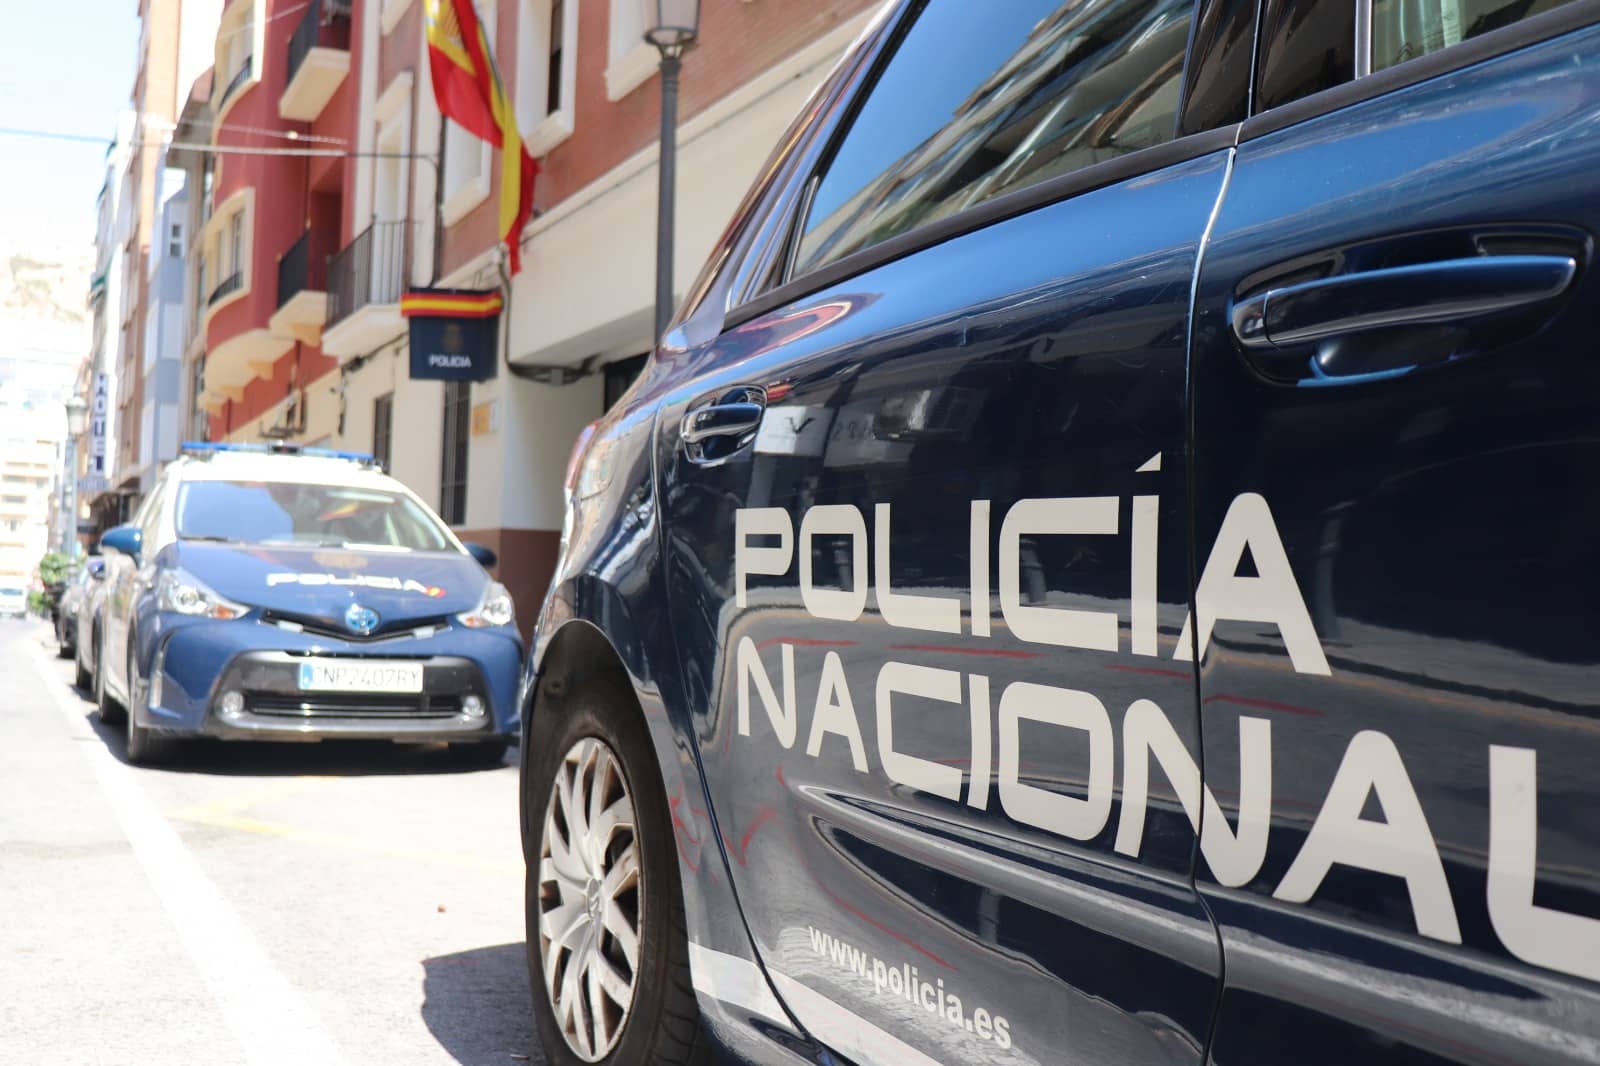 La Conselleria de Justicia e Interior gestiona la retirada de residuos peligrosos de la vivienda de Alicante donde se produjo una explosión el domingo